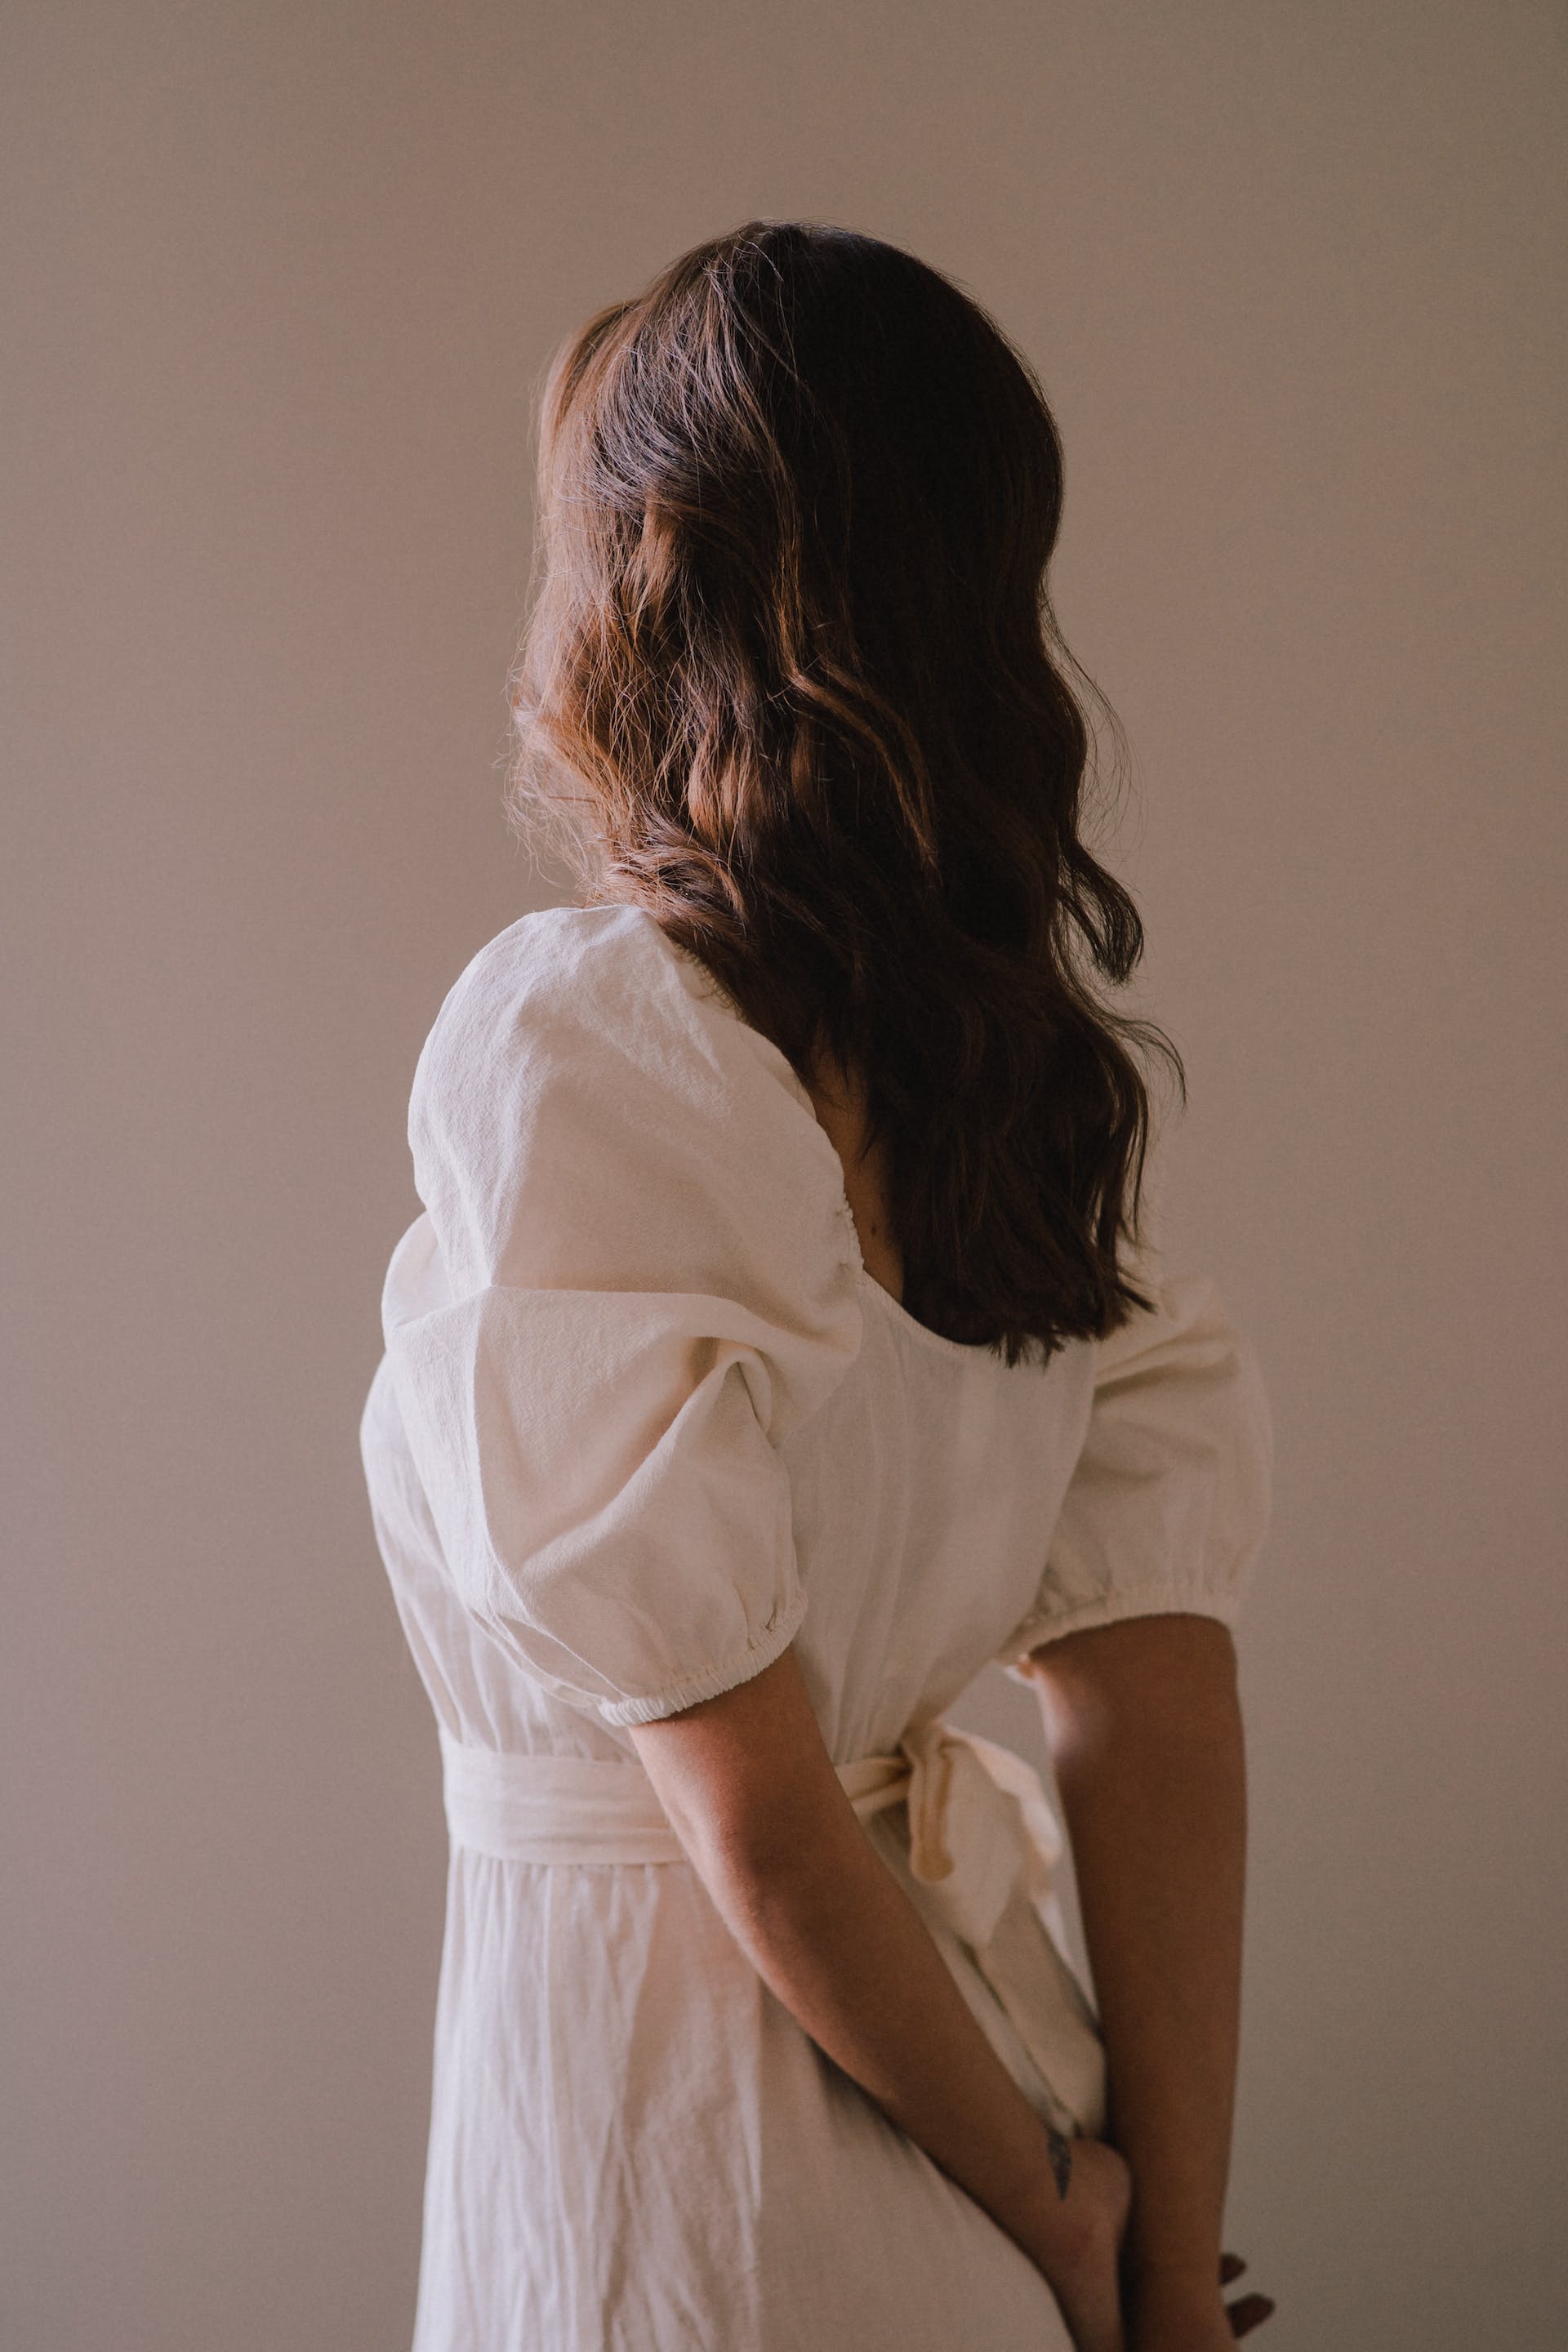 Stehende Frau in weißem Kleid | Quelle: Pexels